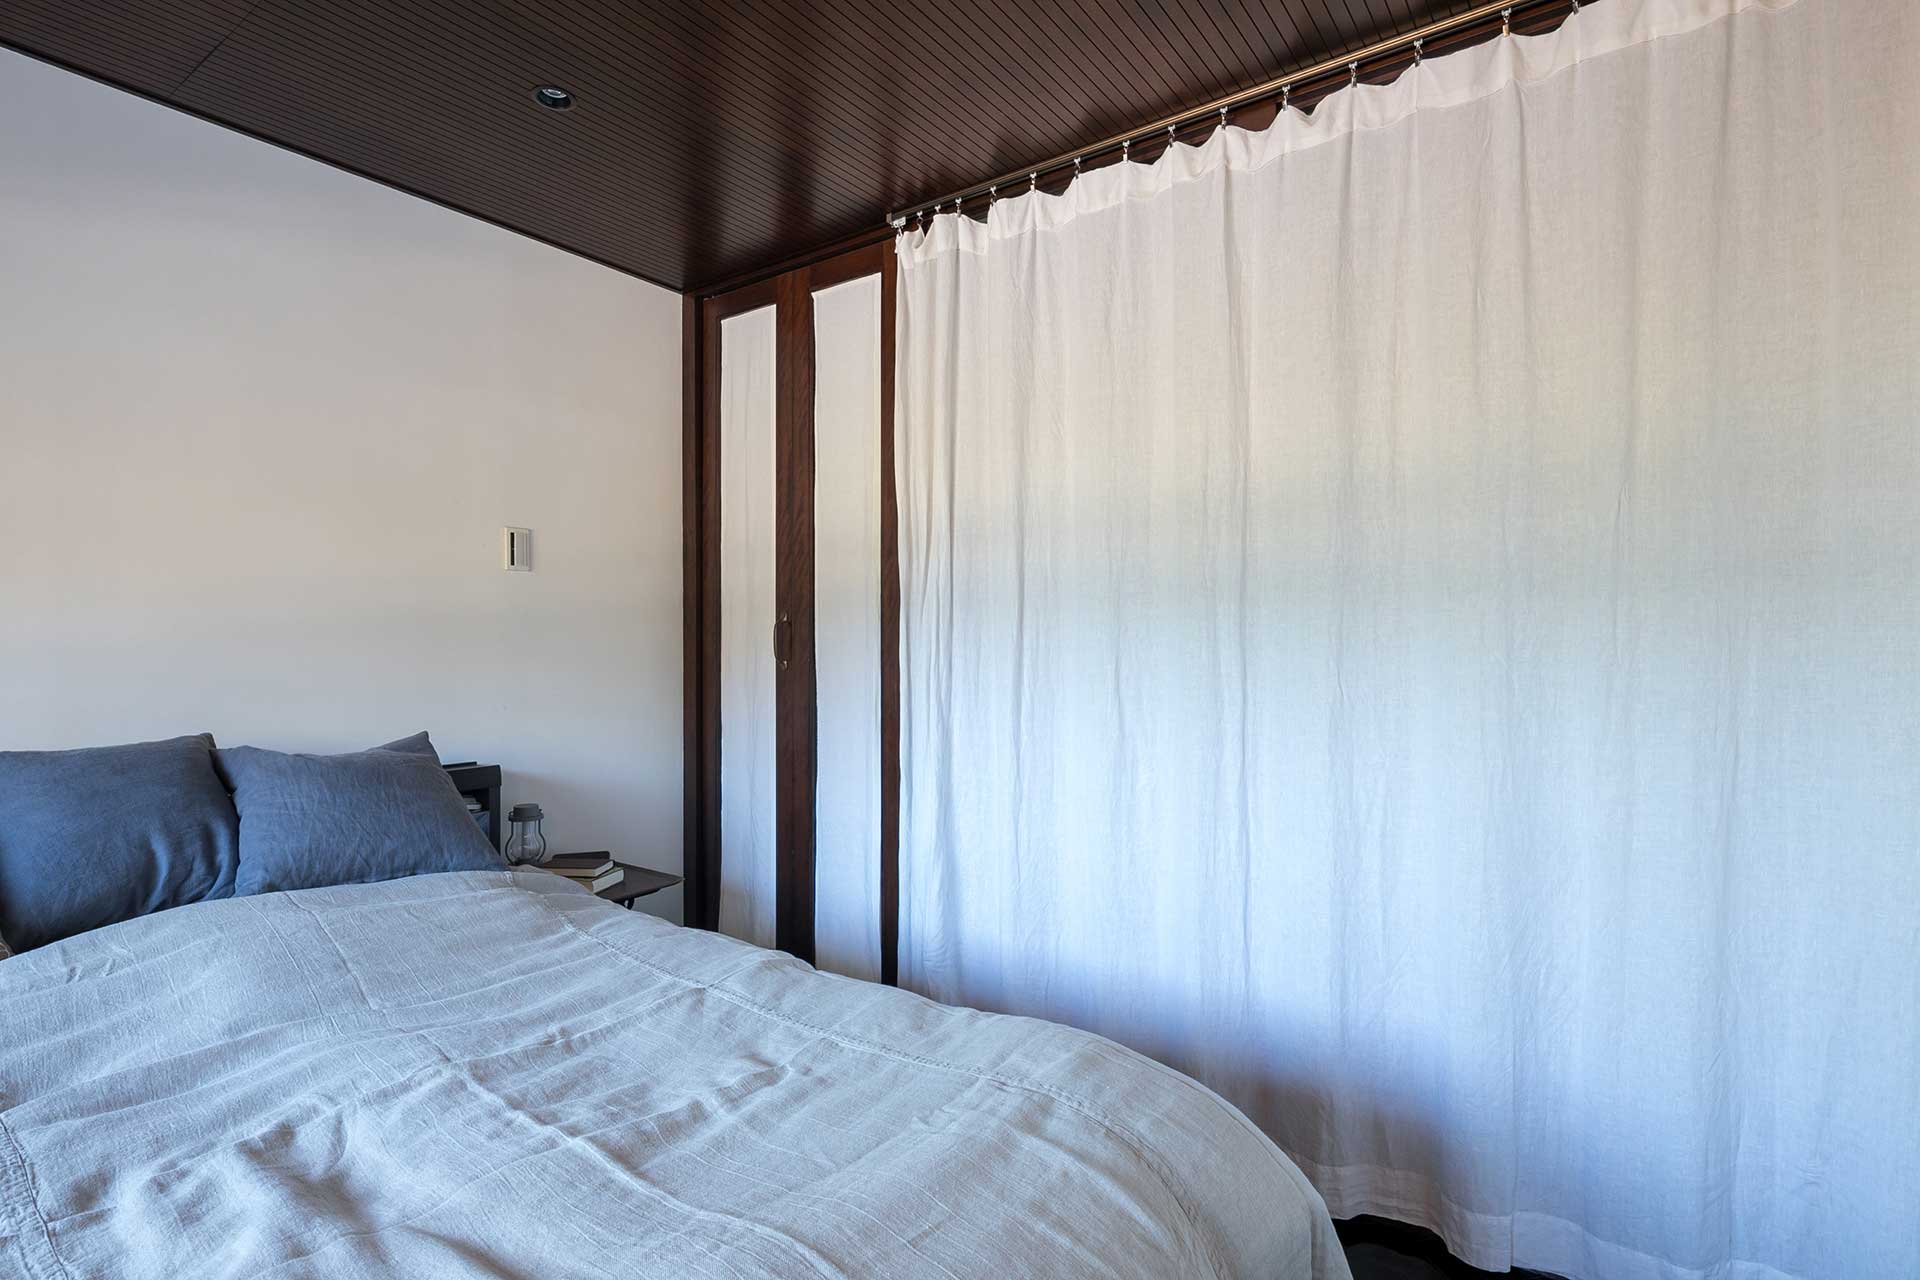 寝室と玄関の間のカーテンは、昼間は開けて夜は閉めるそう。カーテンをひくと一気に雰囲気が変わり、こもり感のある空間に。